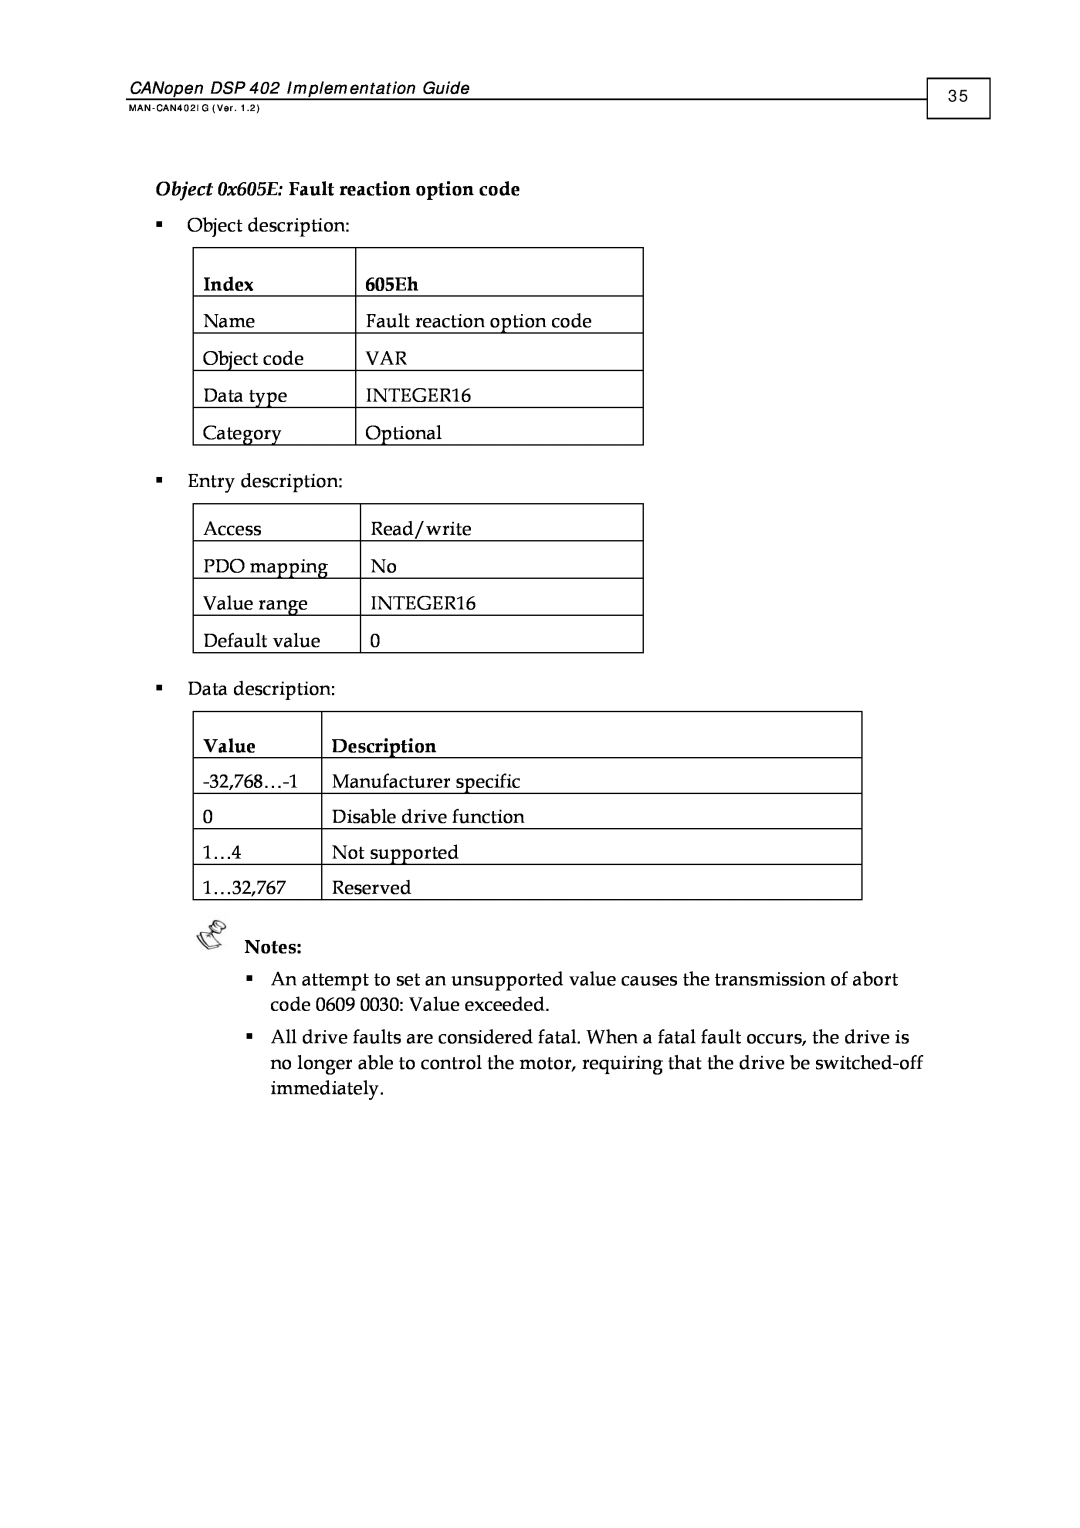 Elmo DSP 402 manual Object 0x605E Fault reaction option code, Index, 605Eh, Value, Description 